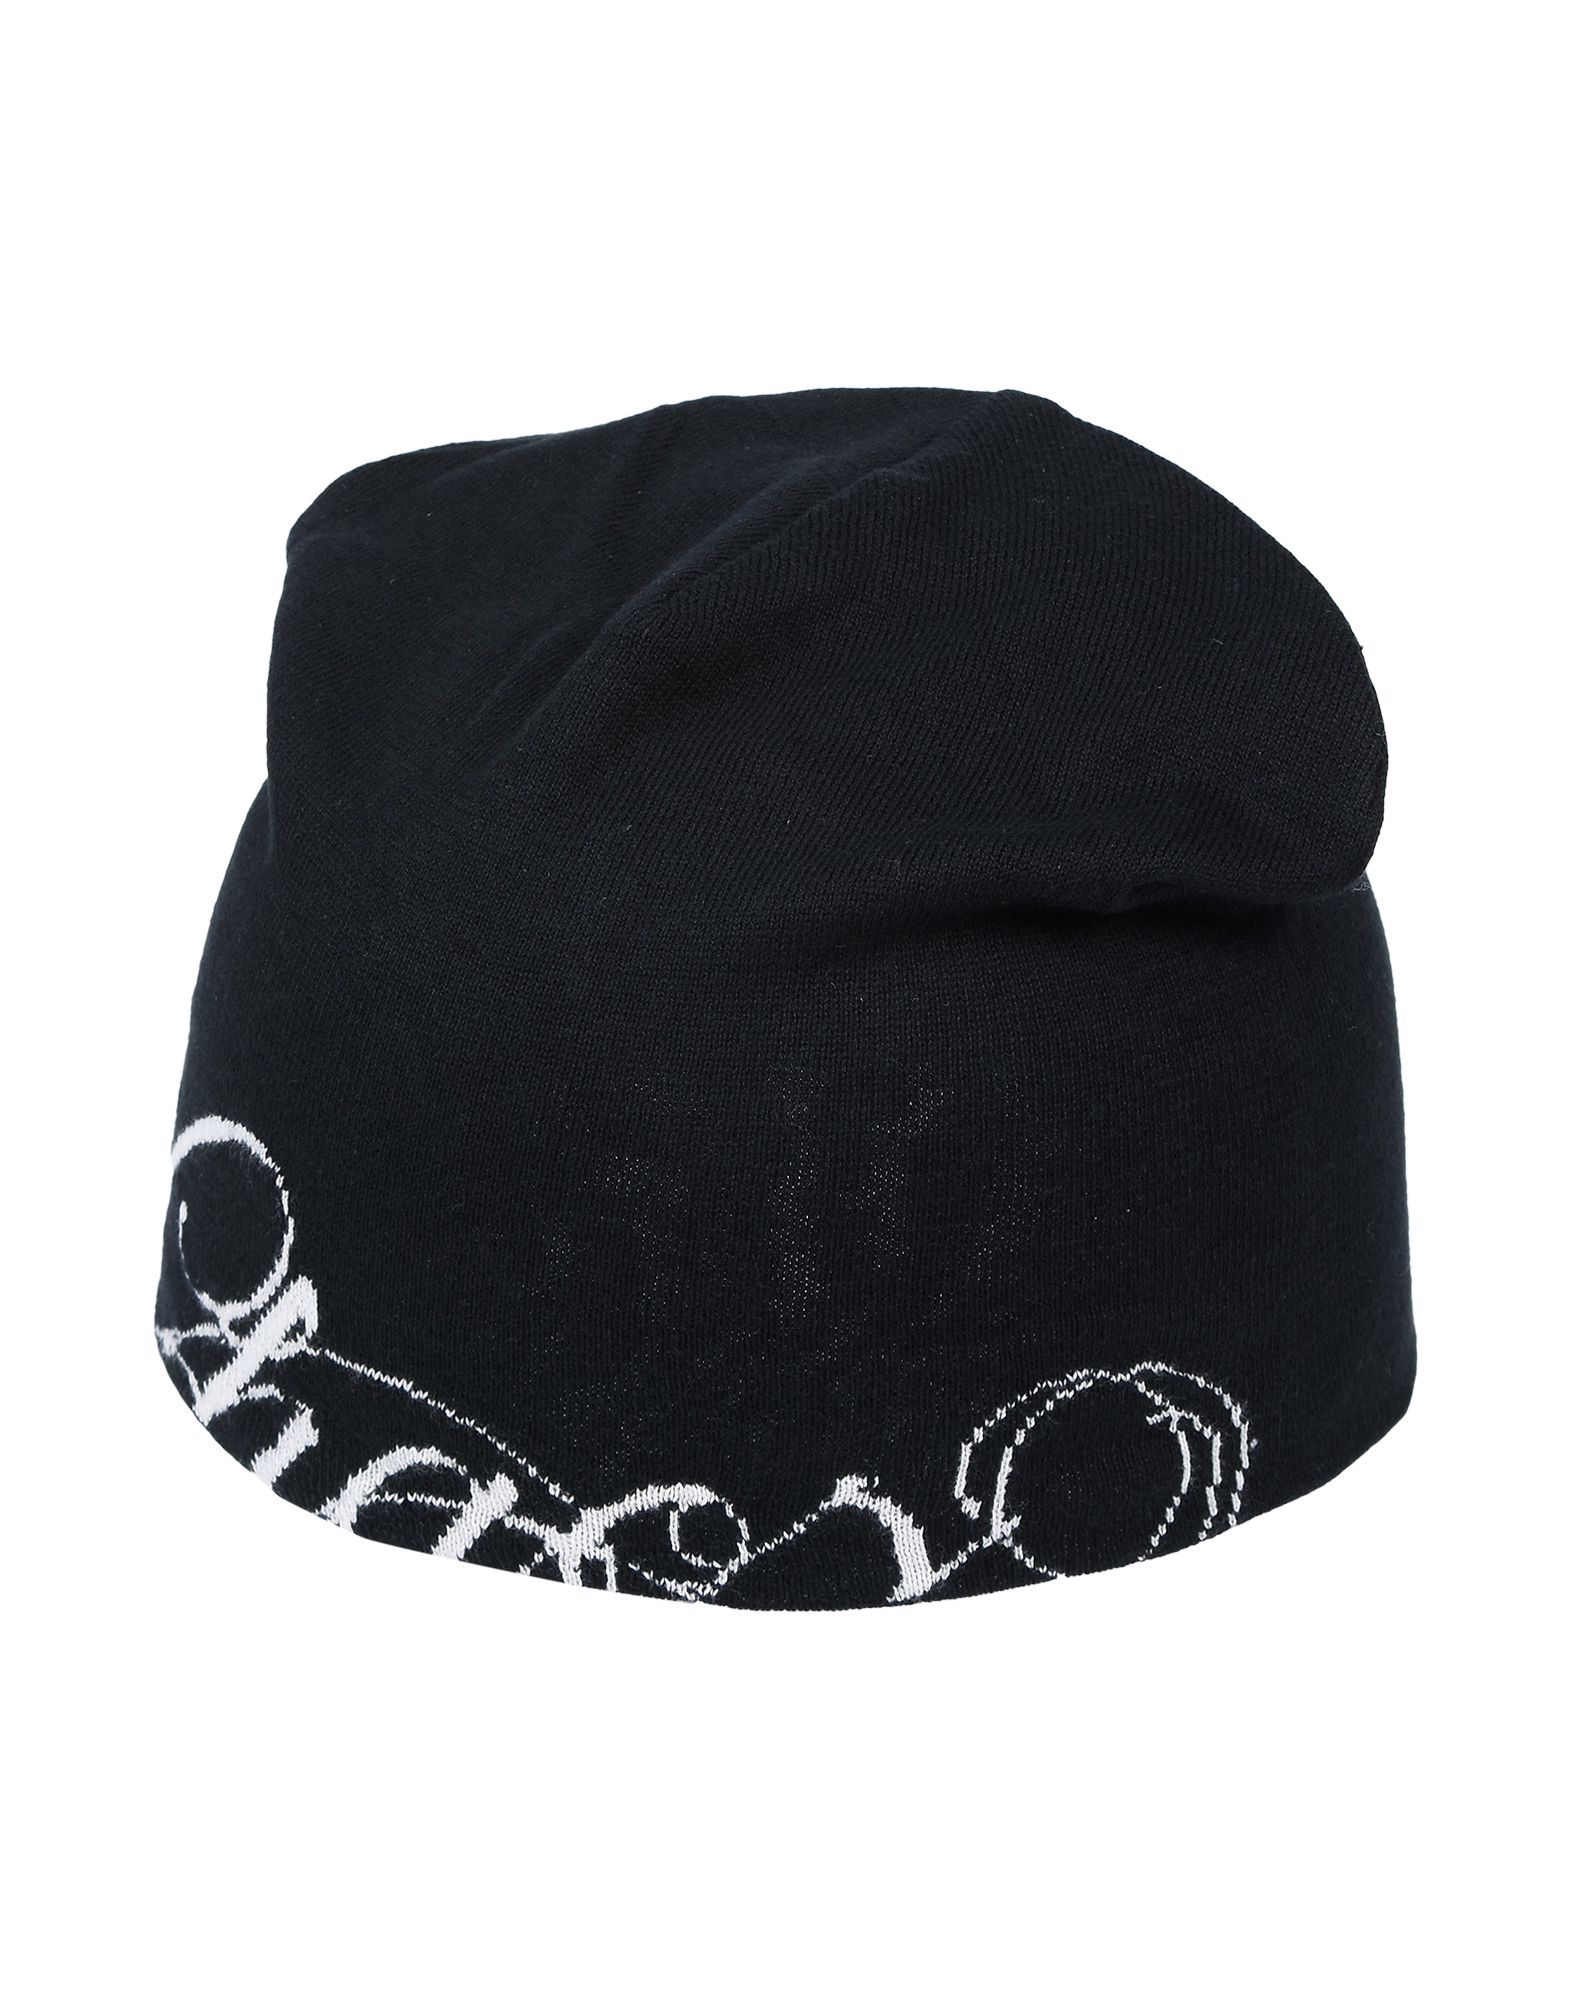 《送料無料》UNDERCOVER レディース 帽子 ブラック one size コットン 100%